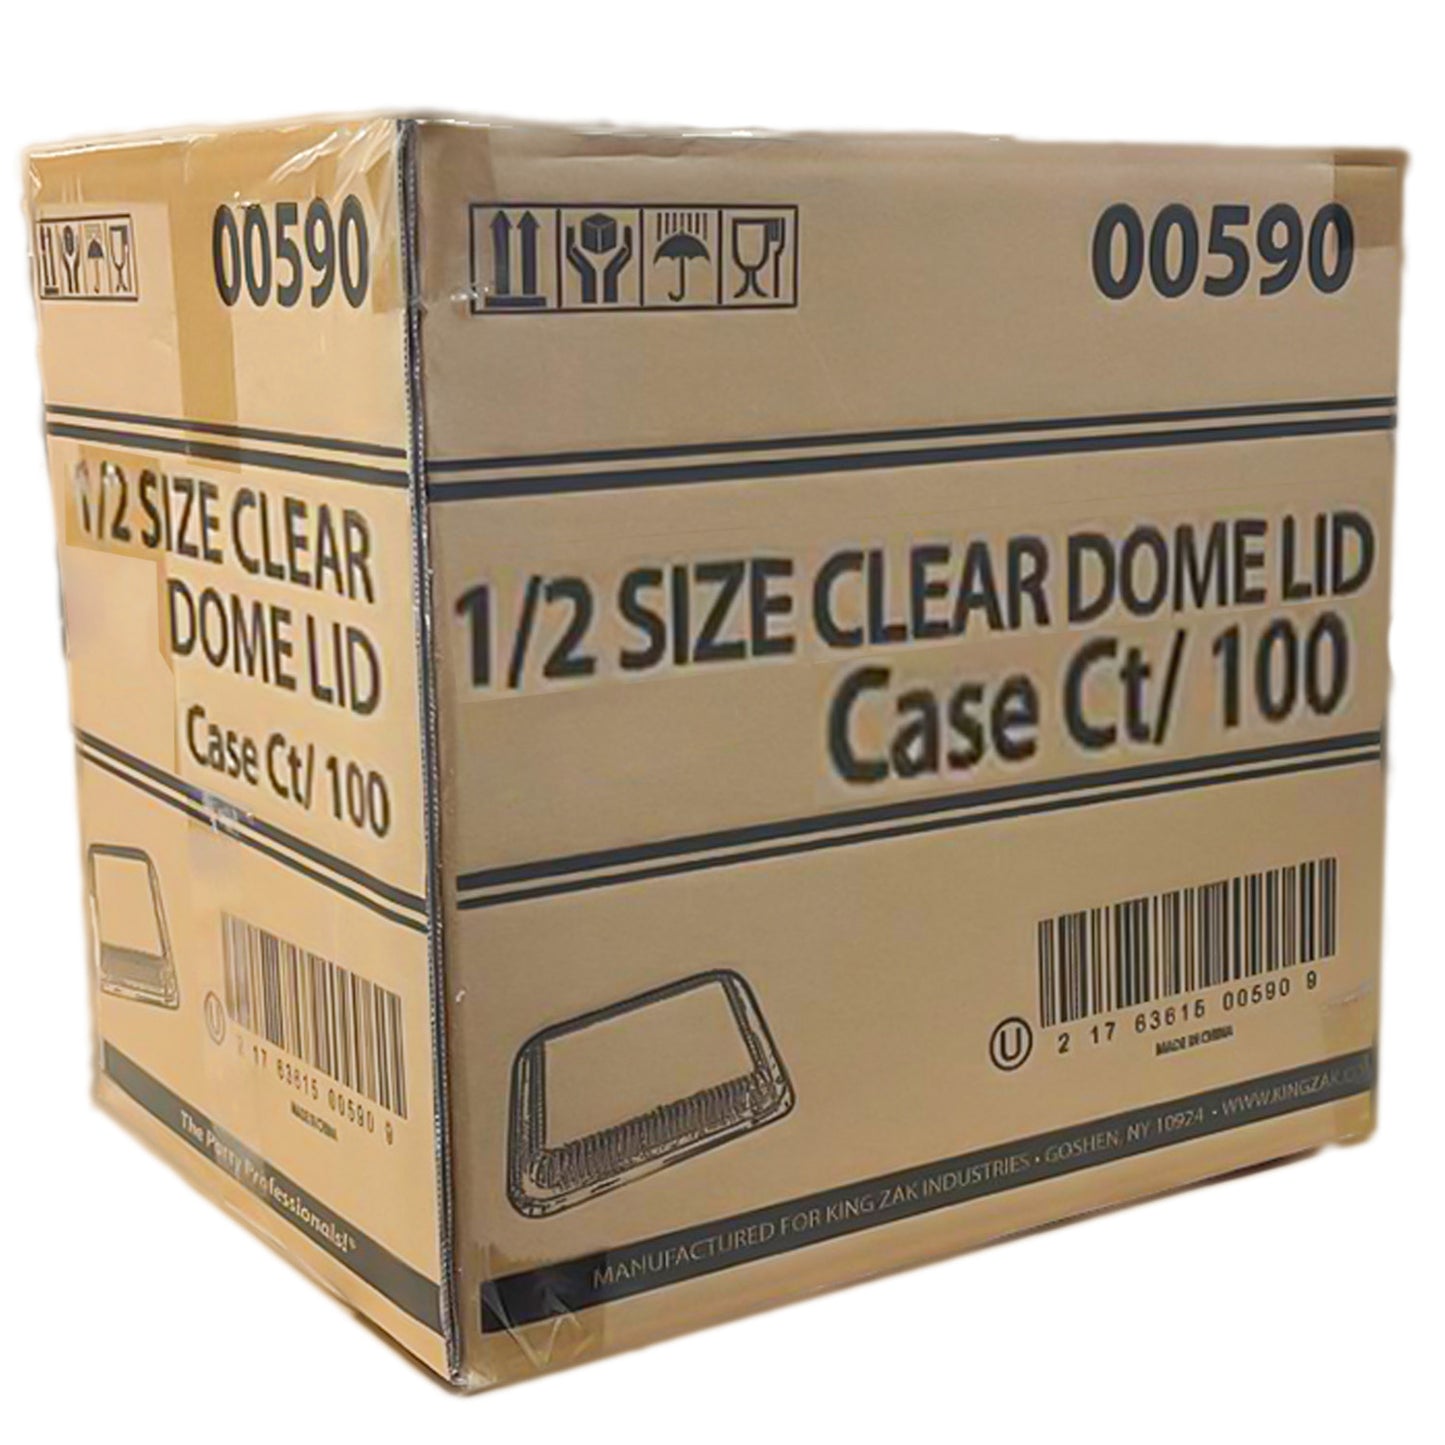 *WHOLESALE* Dome Lids for 9" x 13" Half Size Aluminum Foil Pan | 100 ct/Case Disposable VeZee   